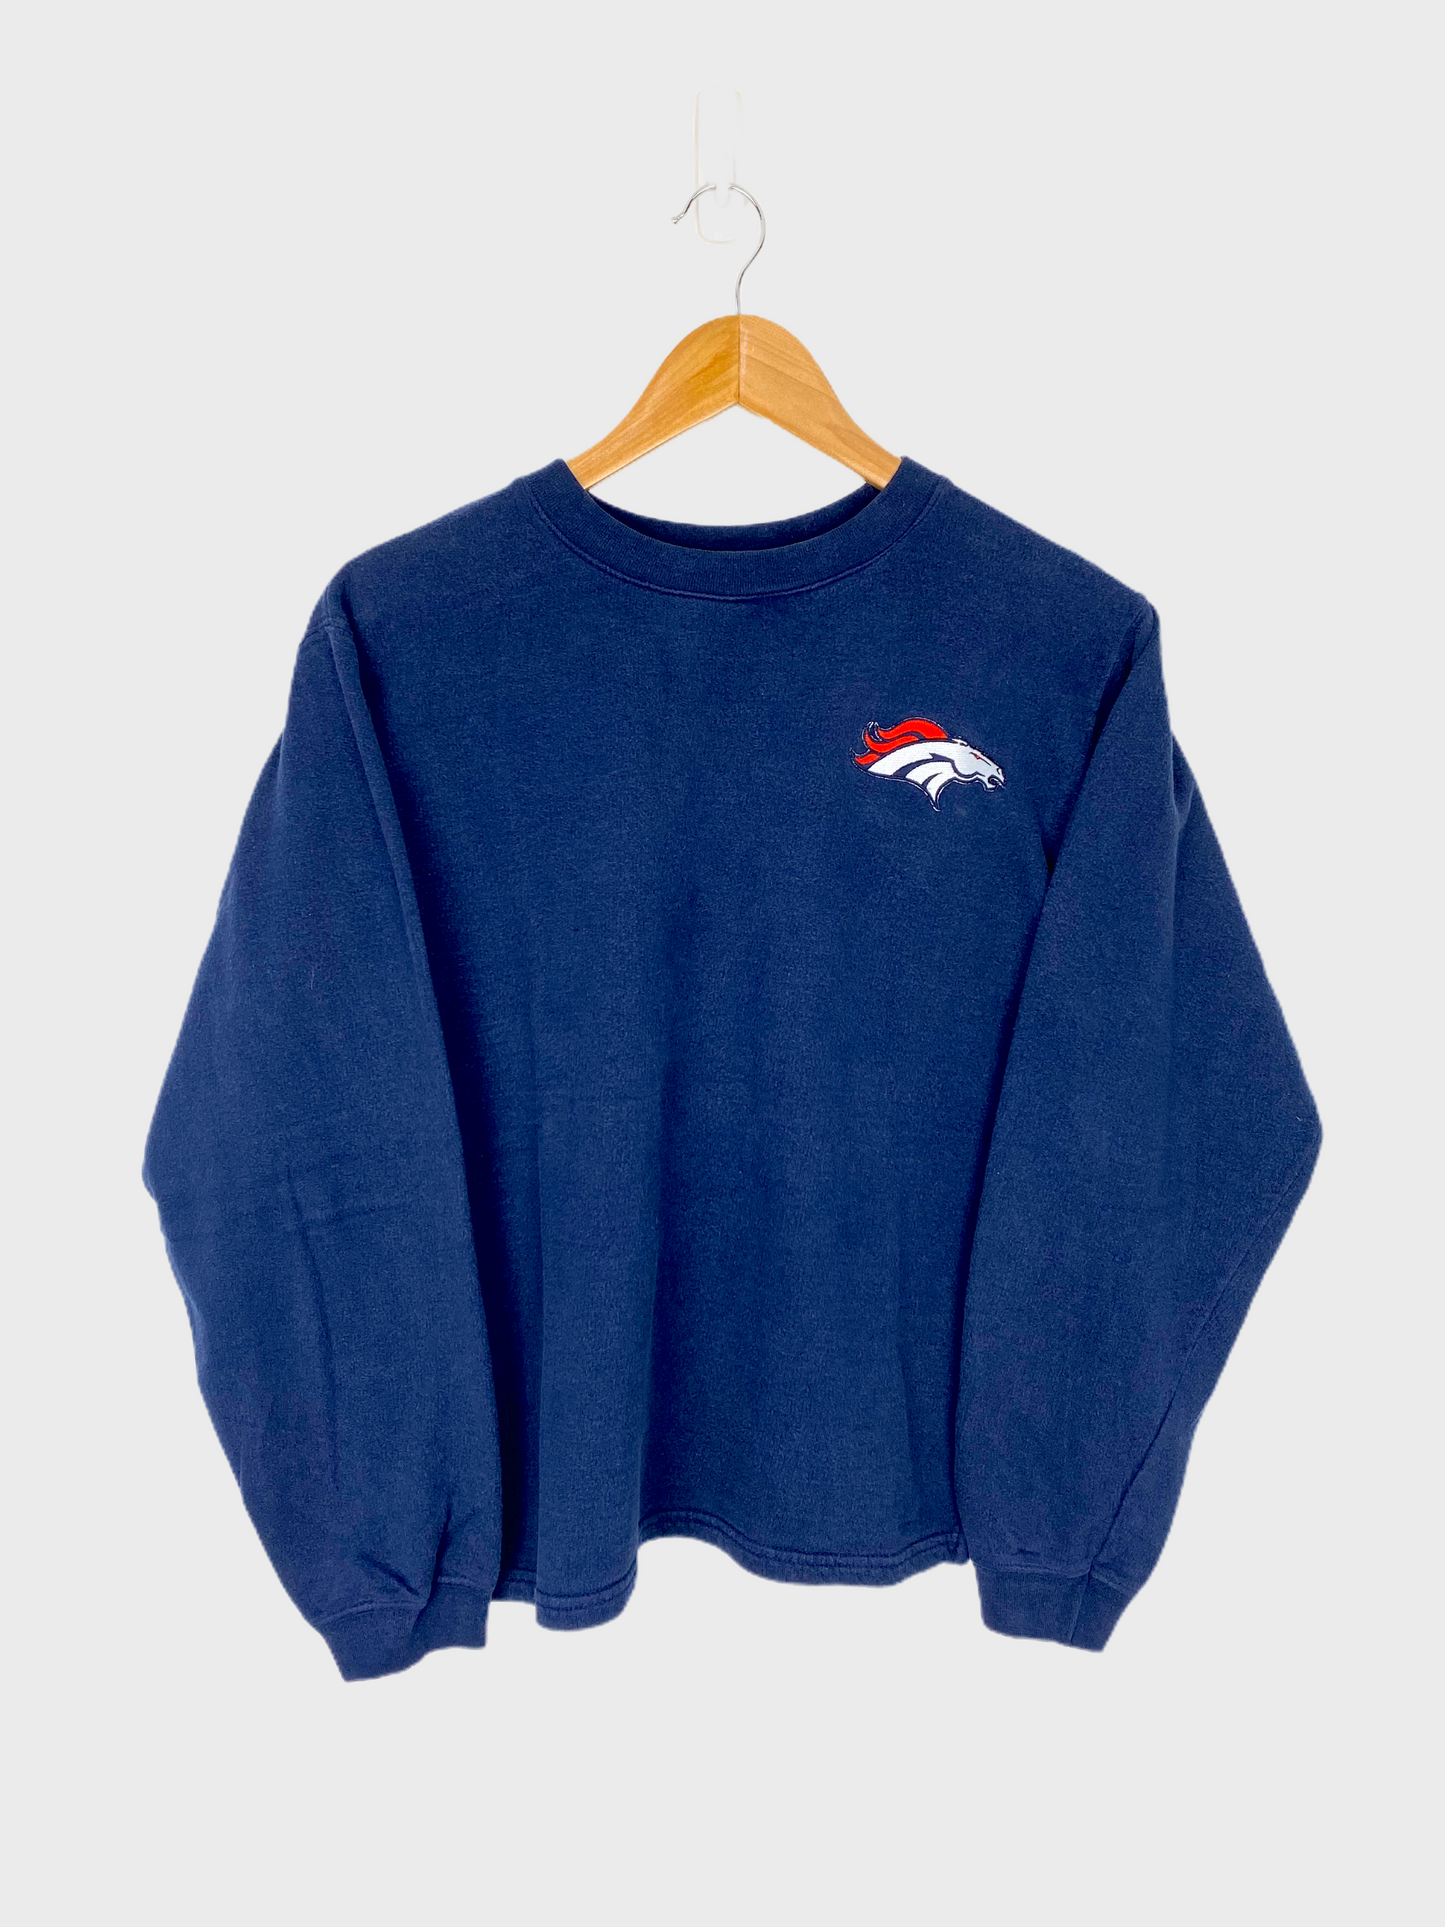 Denver Broncos NFL Embroidered Light Vintage Sweatshirt Size 6